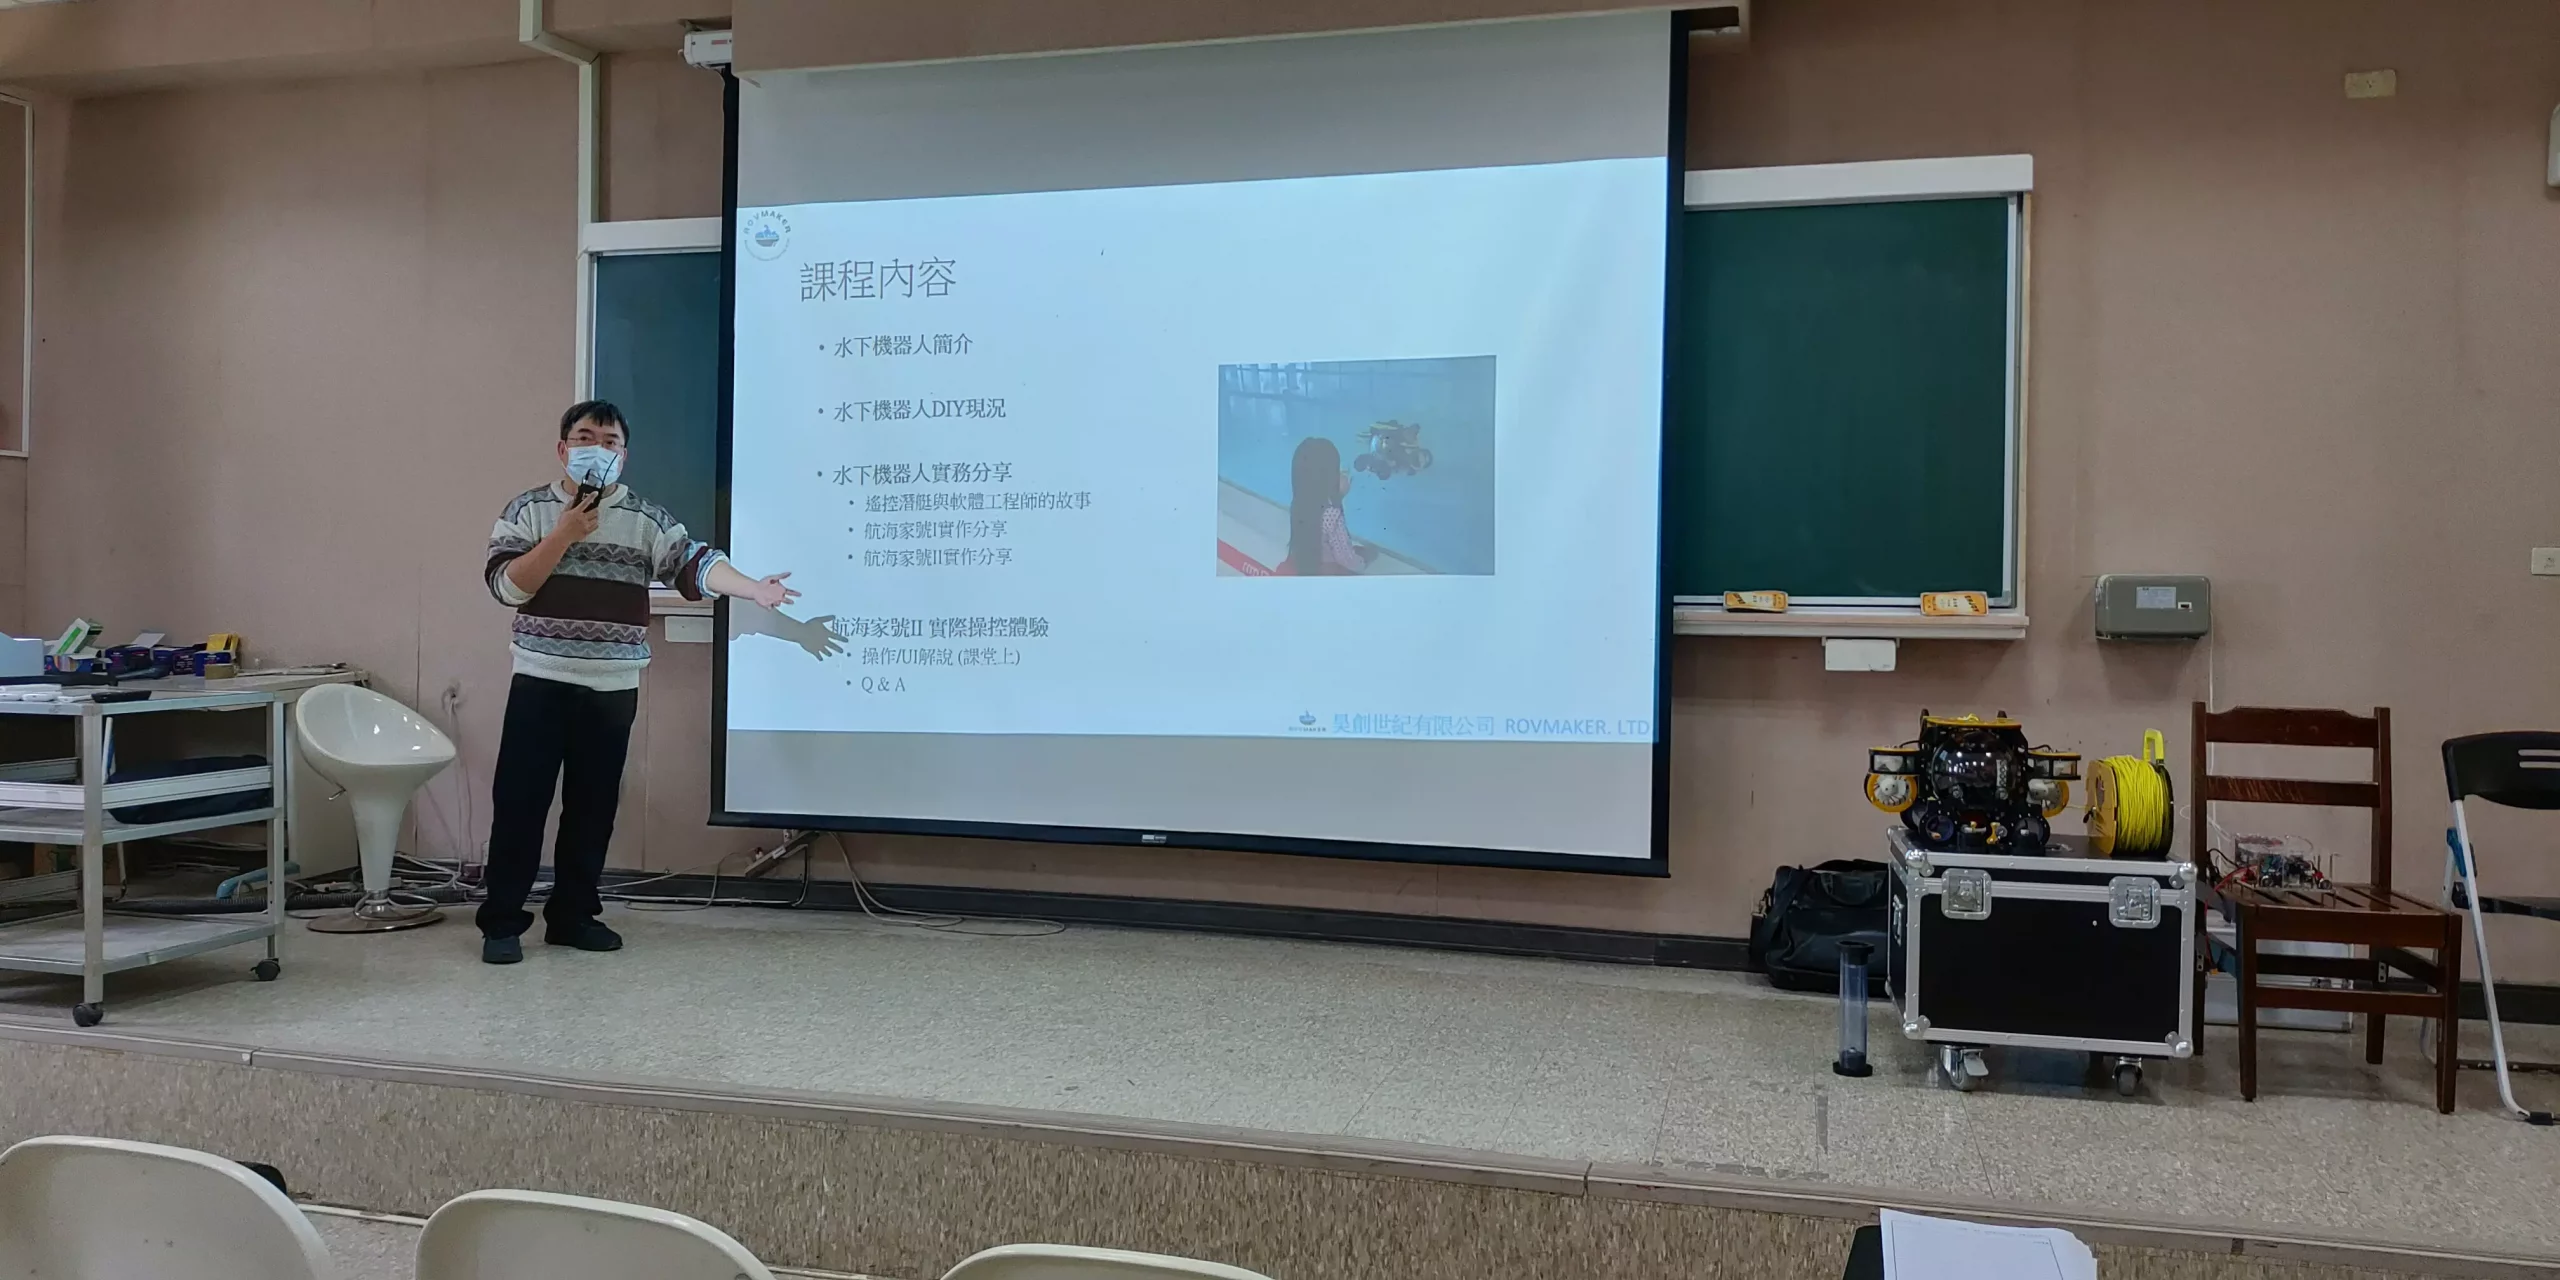 An ROV Seminar at Taiwan Ocean University 2